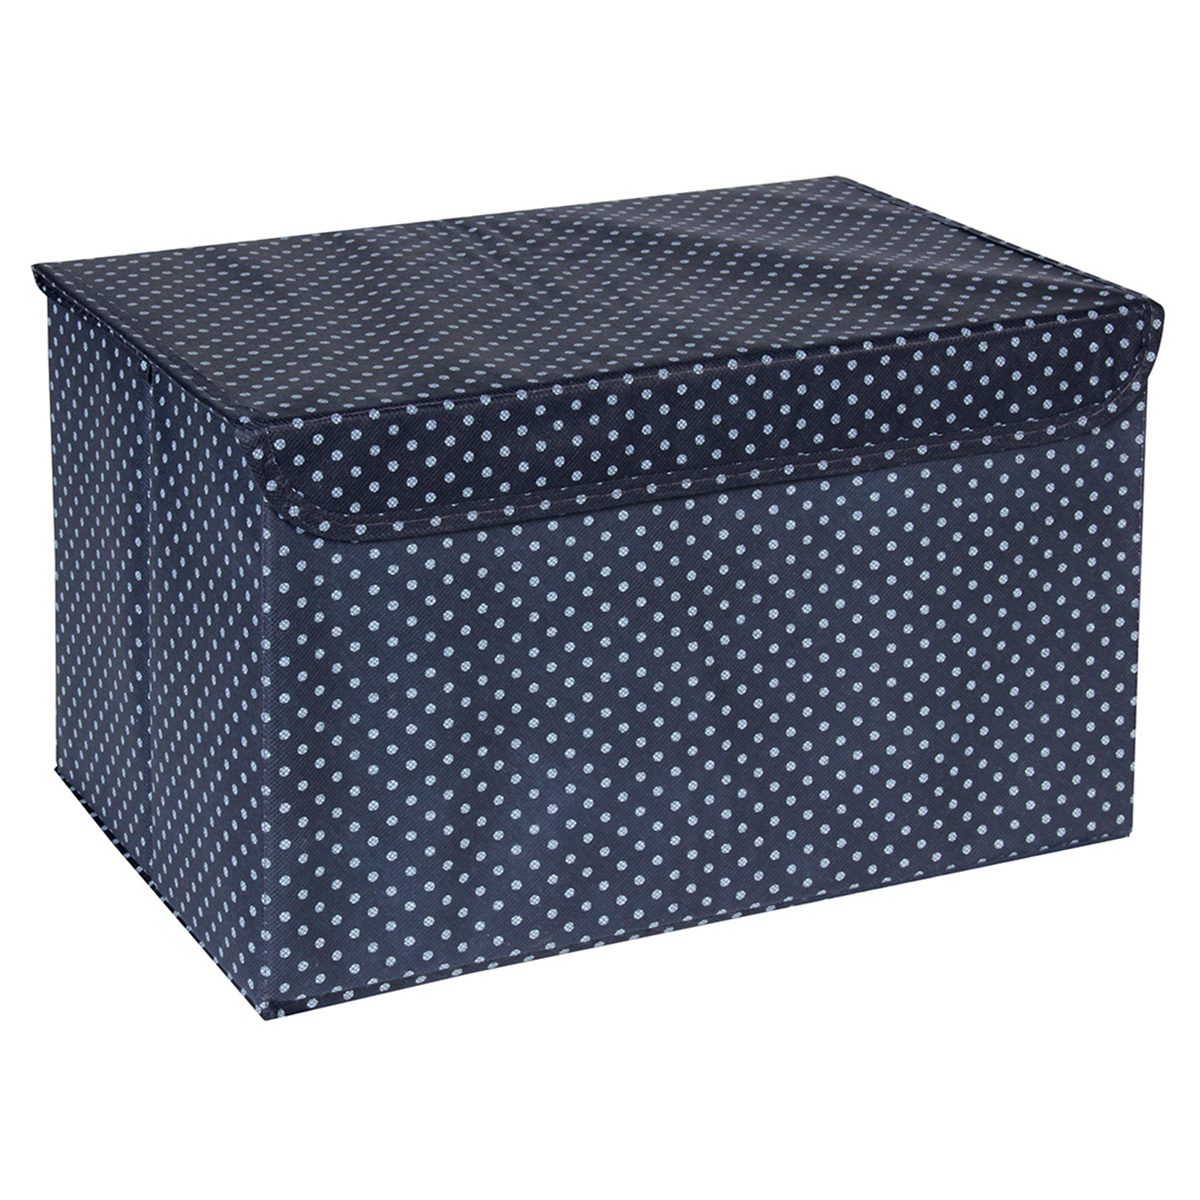 Κουτί αποθήκευσης πτυσσόμενο 38Χ24Χ24 εκ. σκούρο μπλε - KESKOR 57944-1